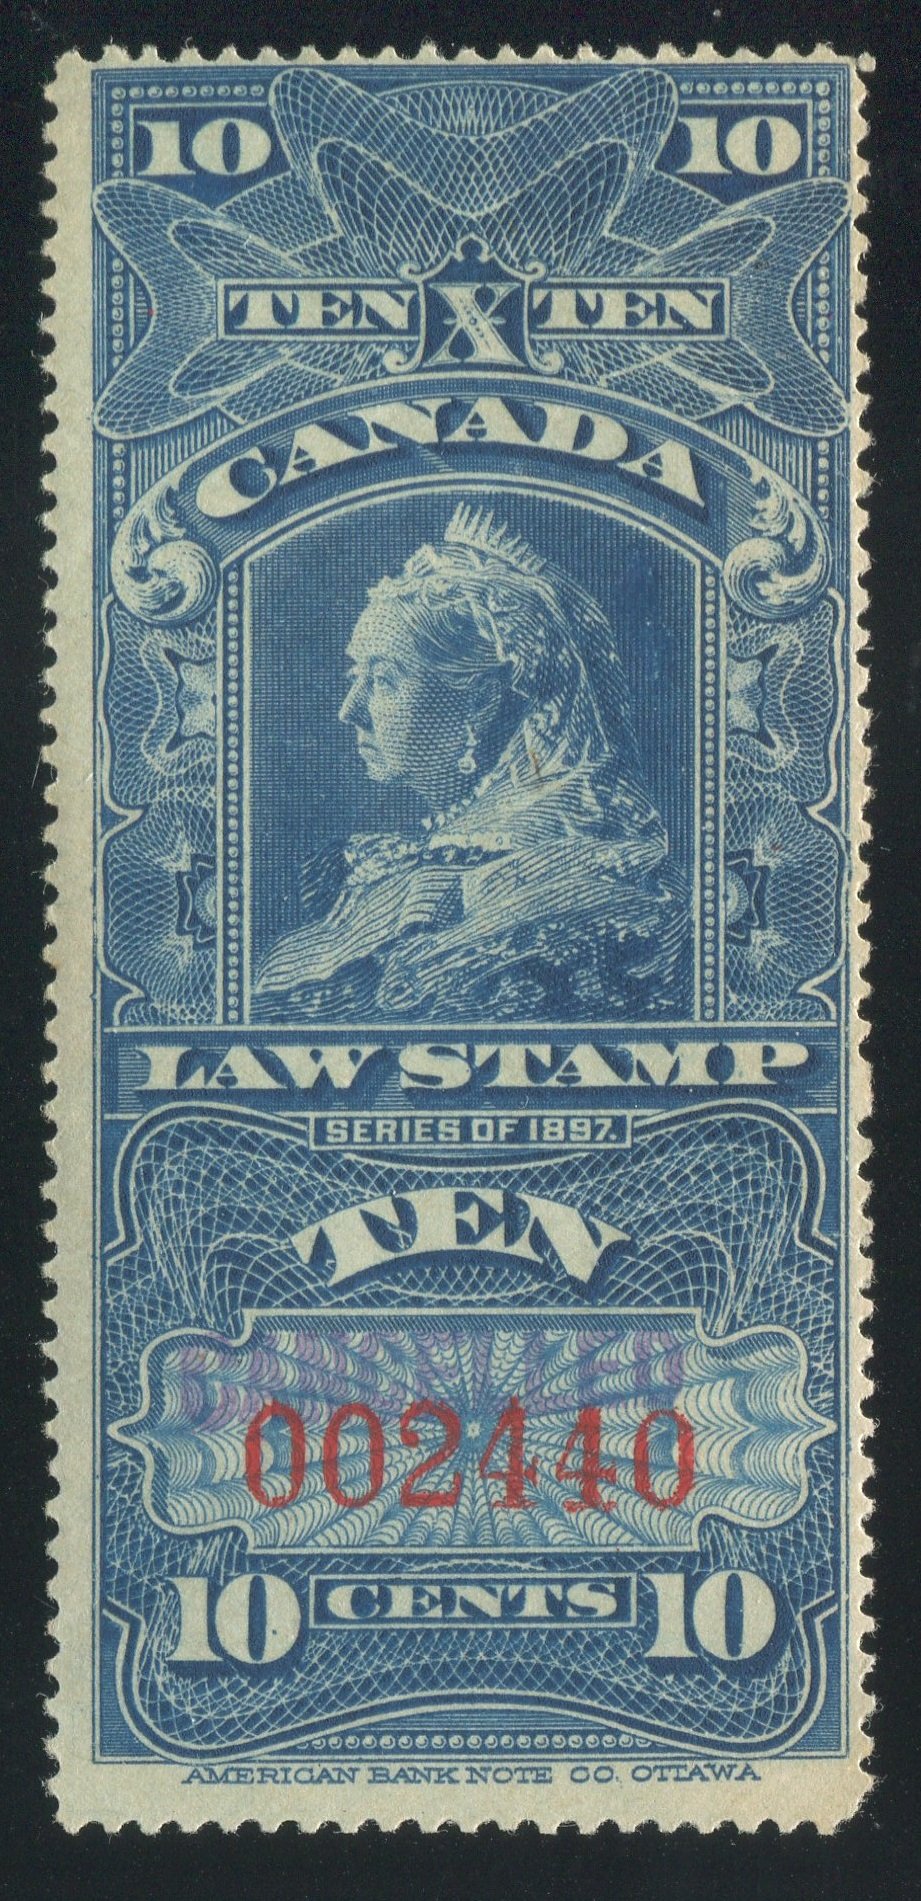 0007SC1710 - FSC7 - Specimen - Deveney Stamps Ltd. Canadian Stamps